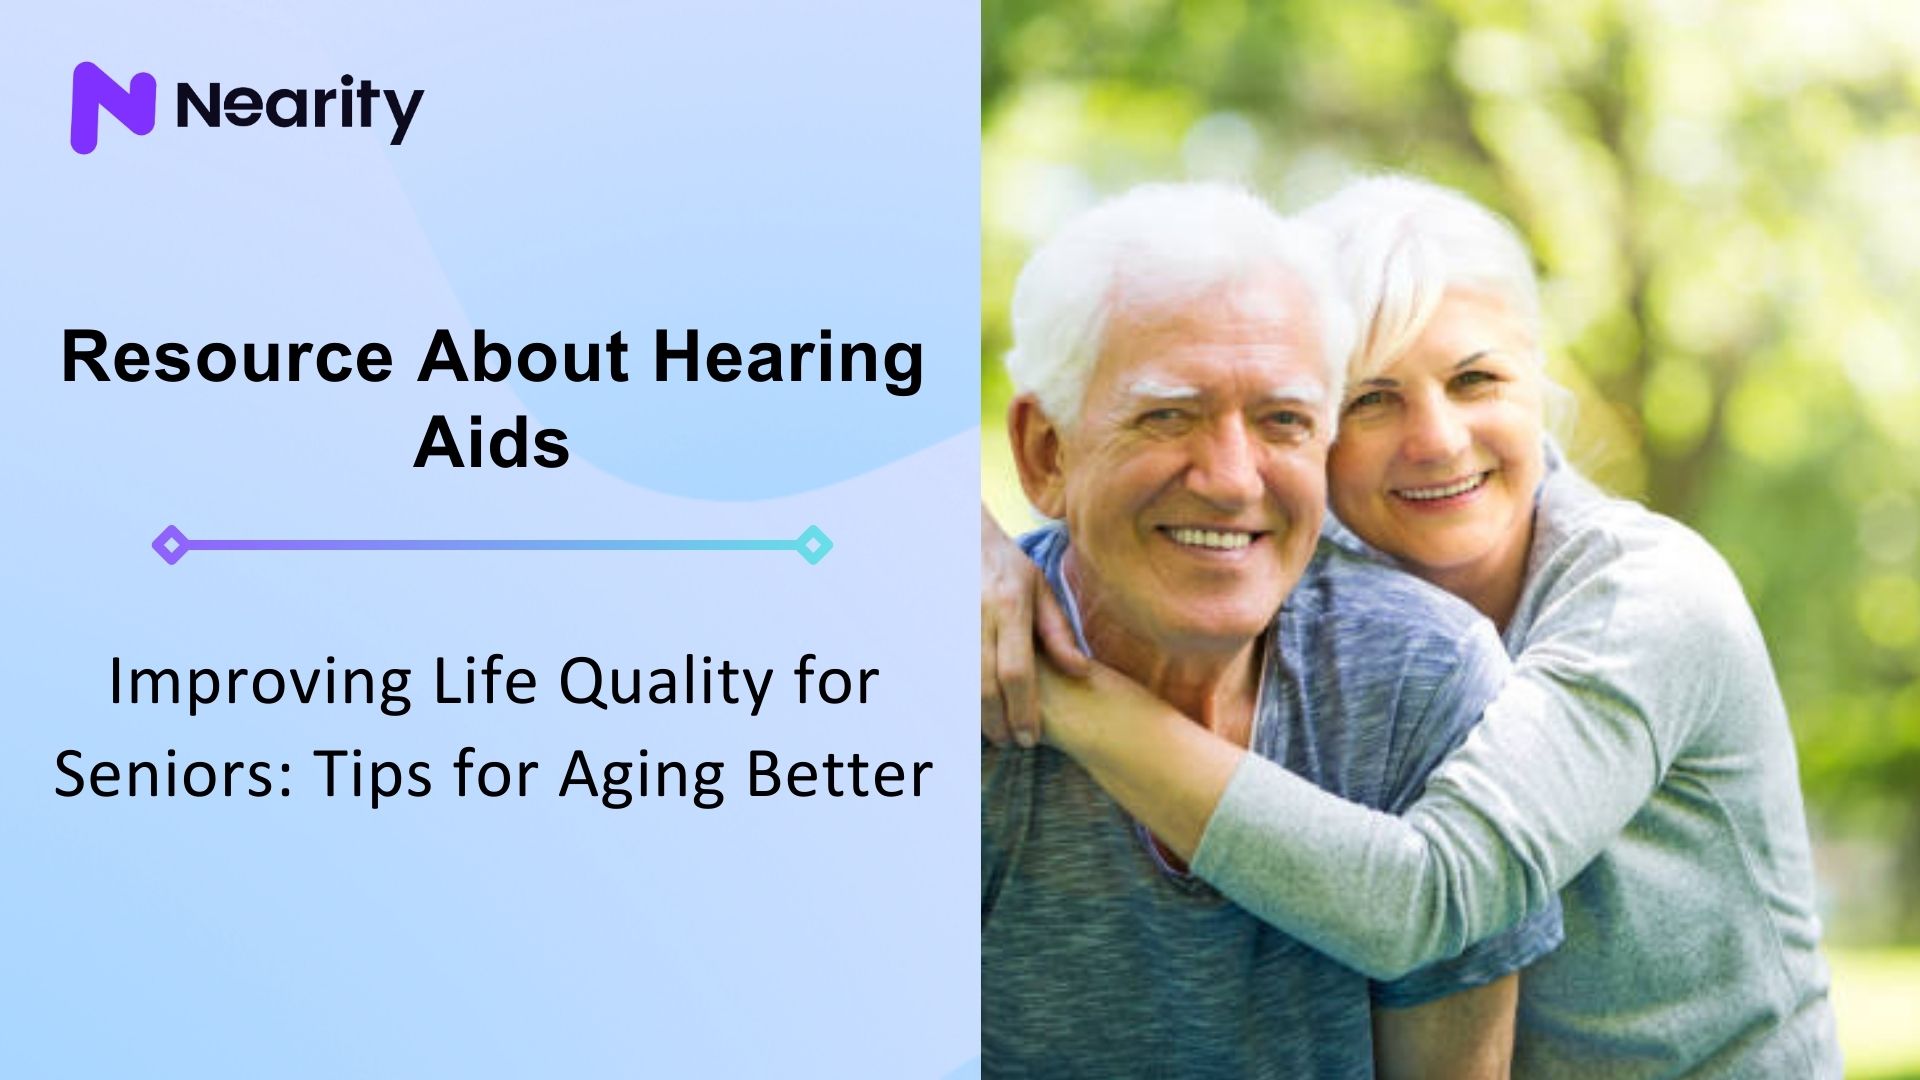 Improving Life Quality for Seniors: Tips for Aging Better